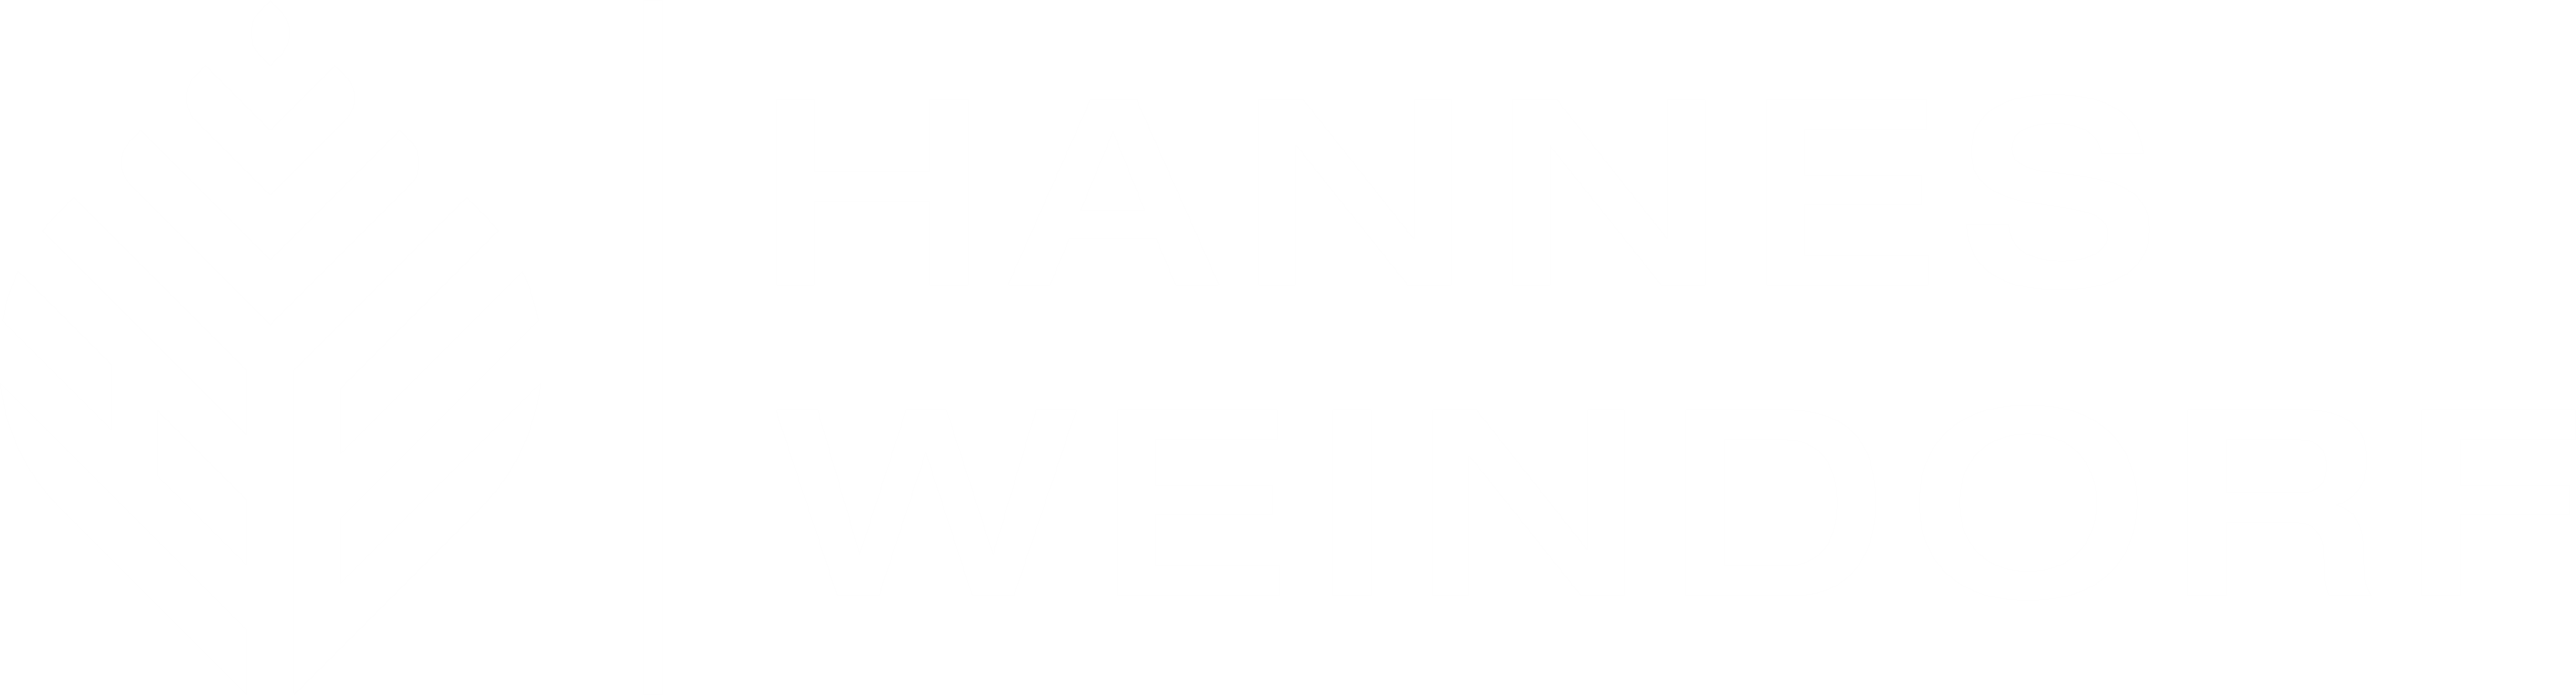 Logo von Hannes Weindorf in weiß